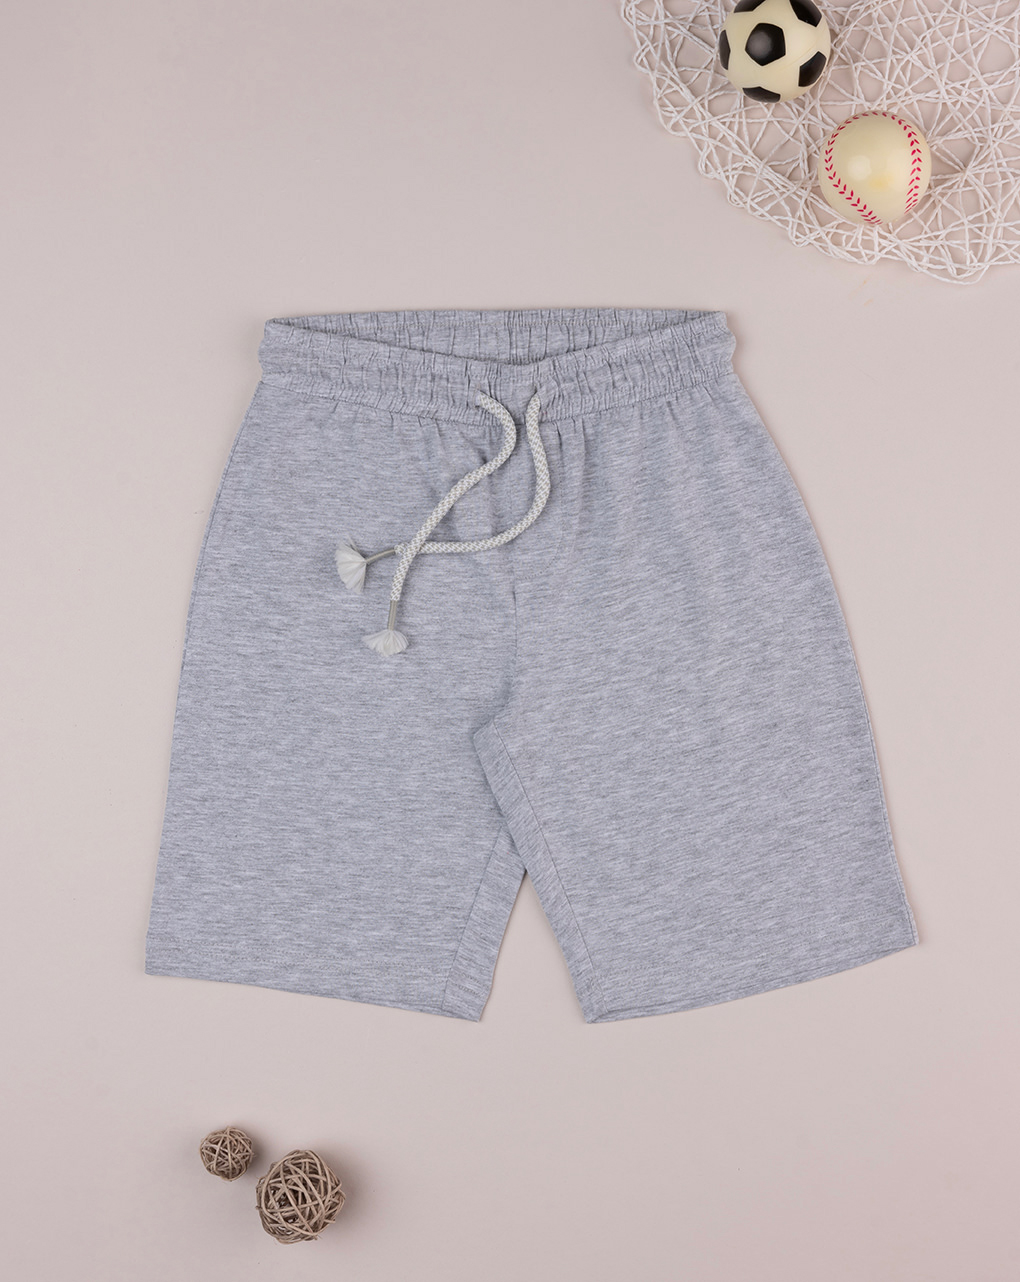 Pantalones cortos grigi bambino - Prénatal